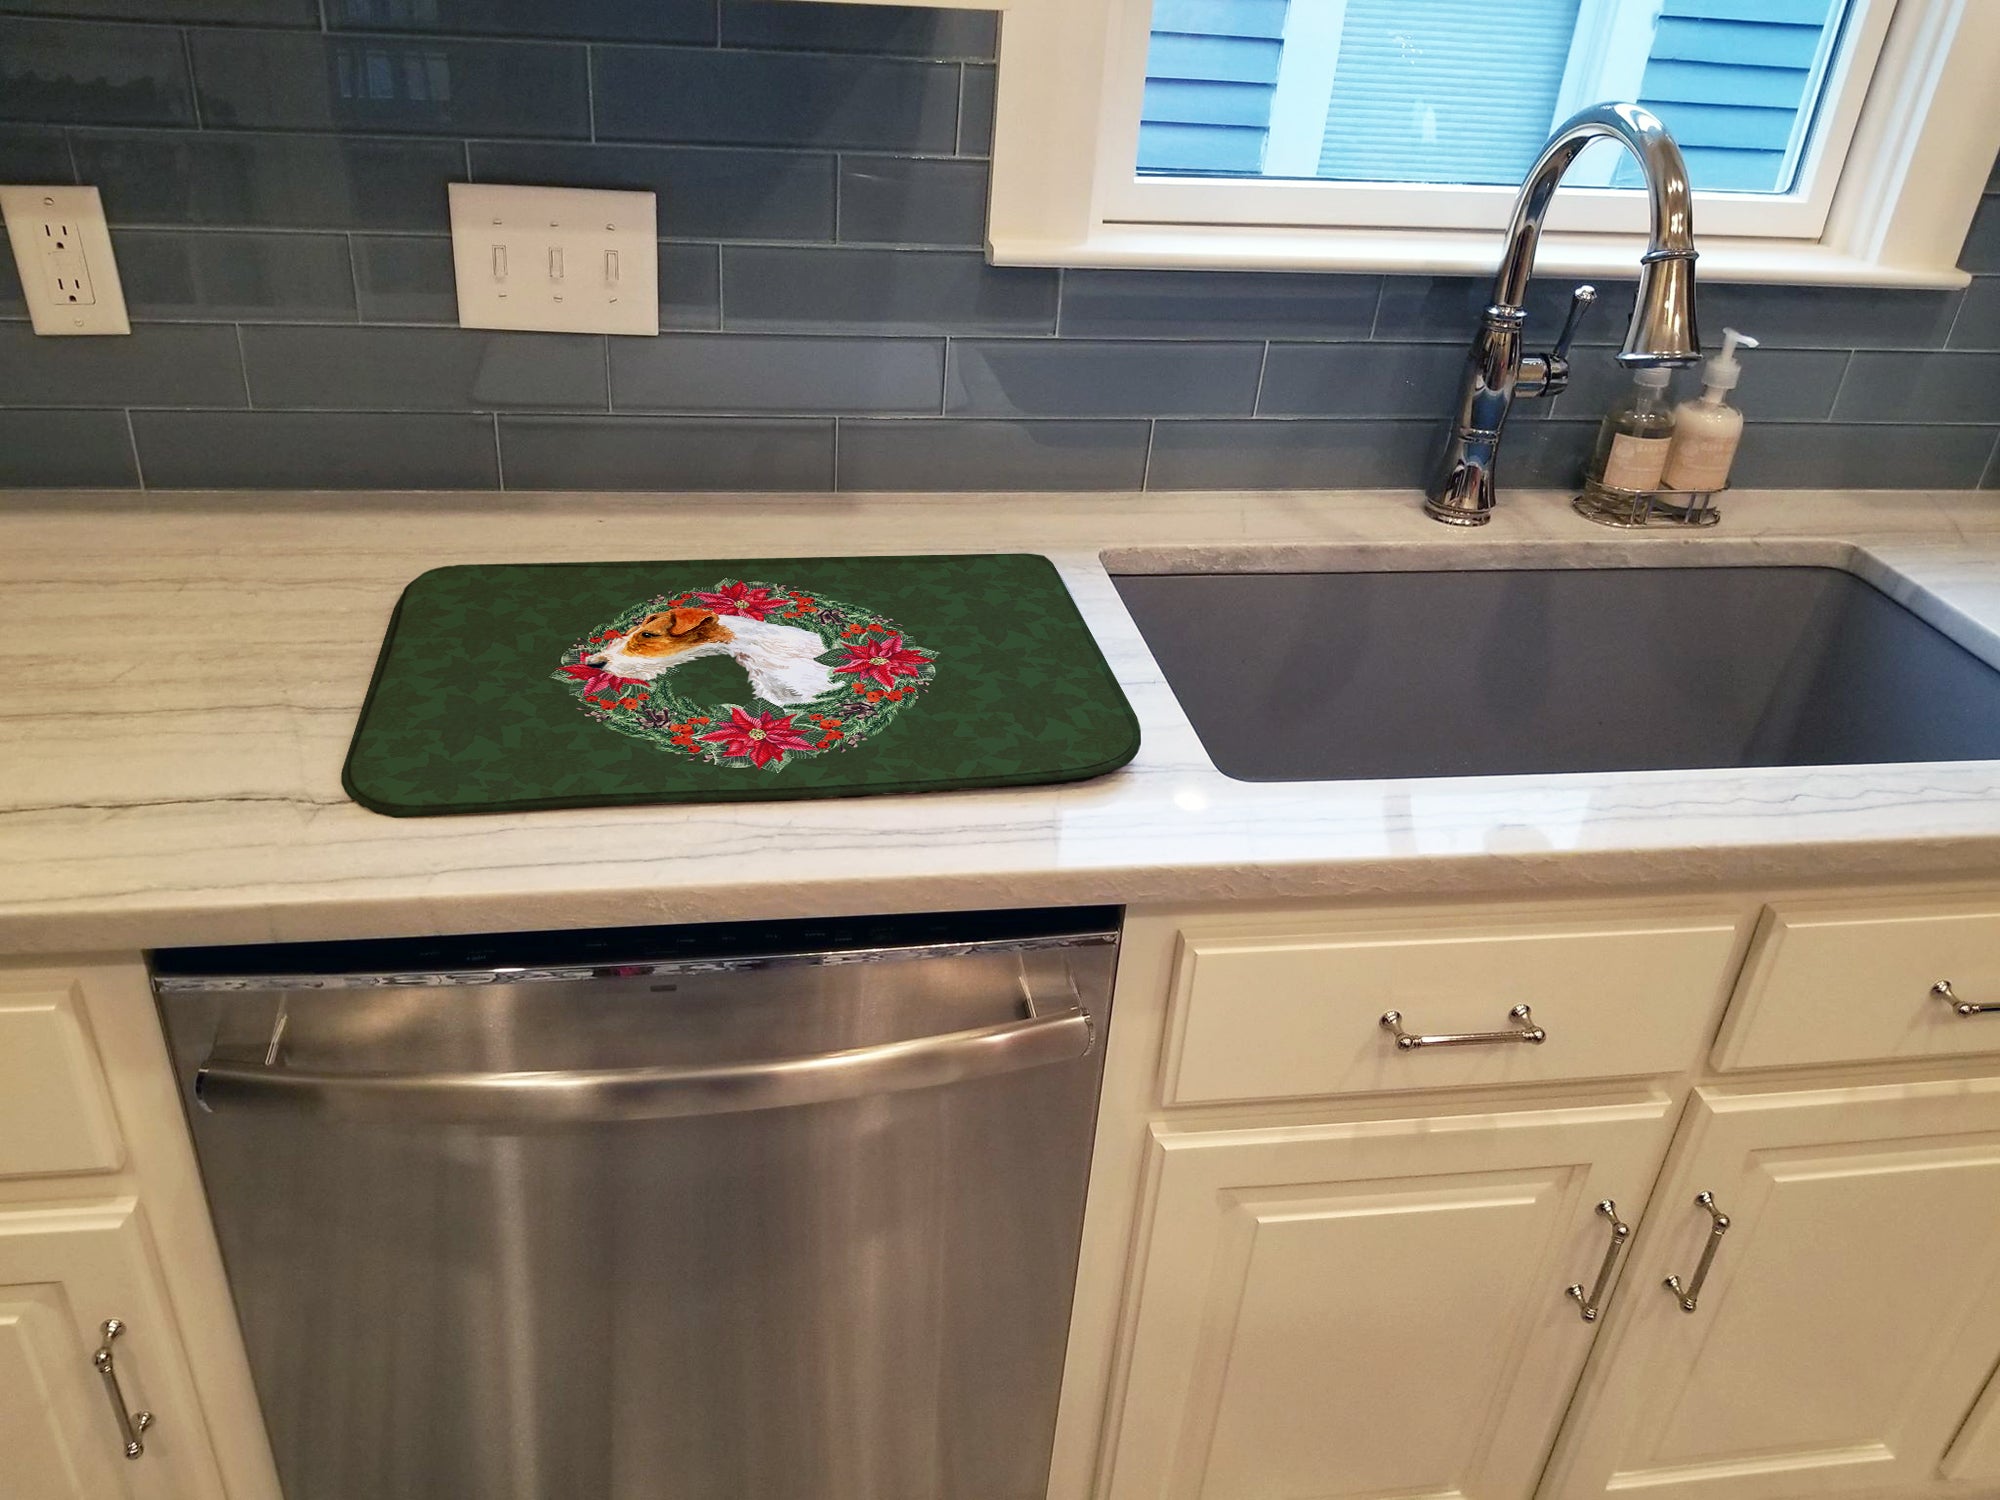 Fox Terrier Poinsetta Wreath Dish Drying Mat CK1516DDM